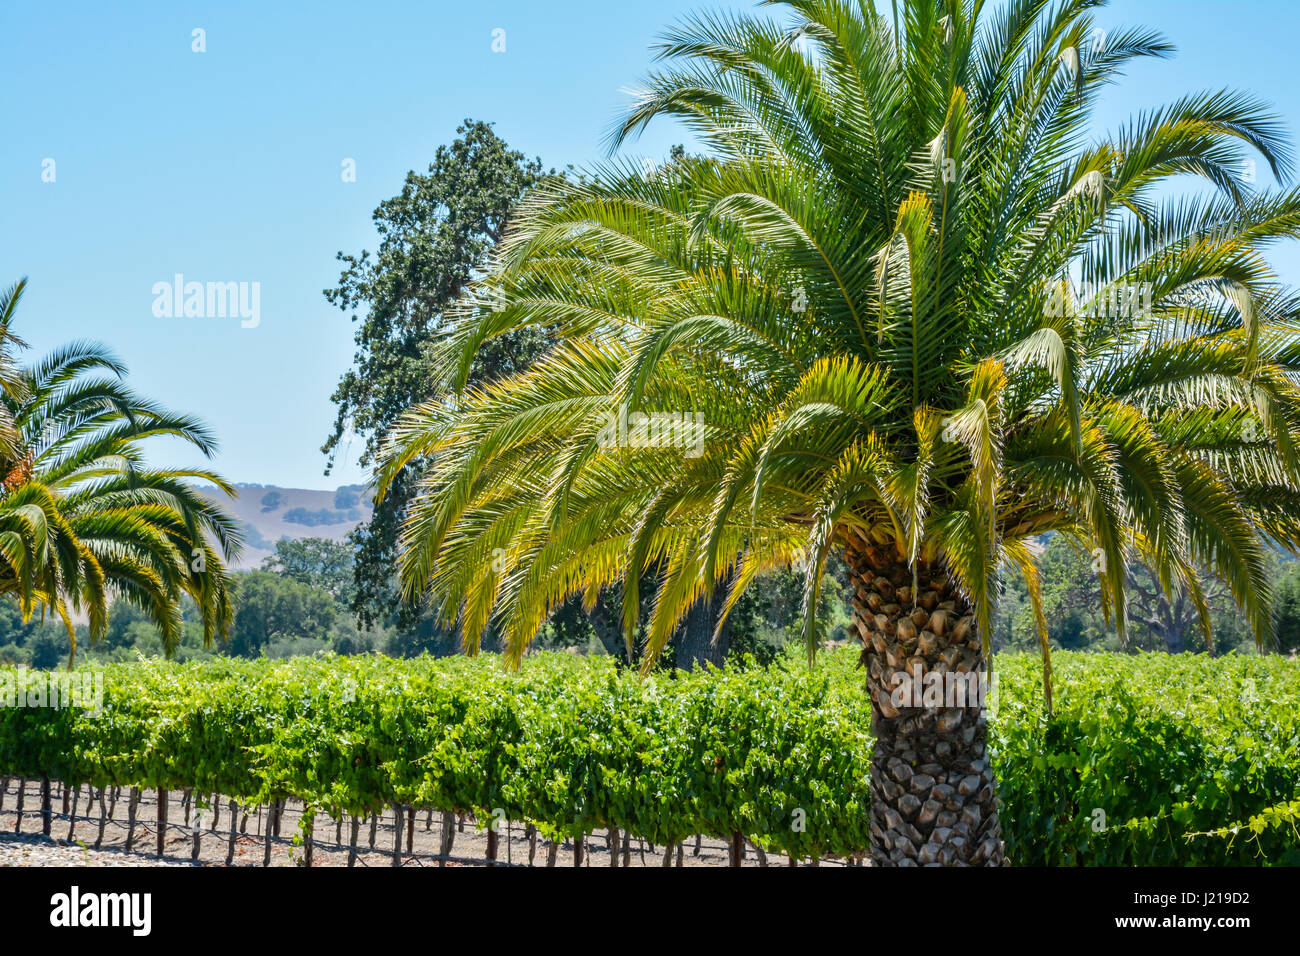 Palmen mit Blick auf die Zeilen eines Weinbergs inmitten der sanften Hügel und Berge von Santa Ynez Tal Wein-Land in Kalifornien Stockfoto